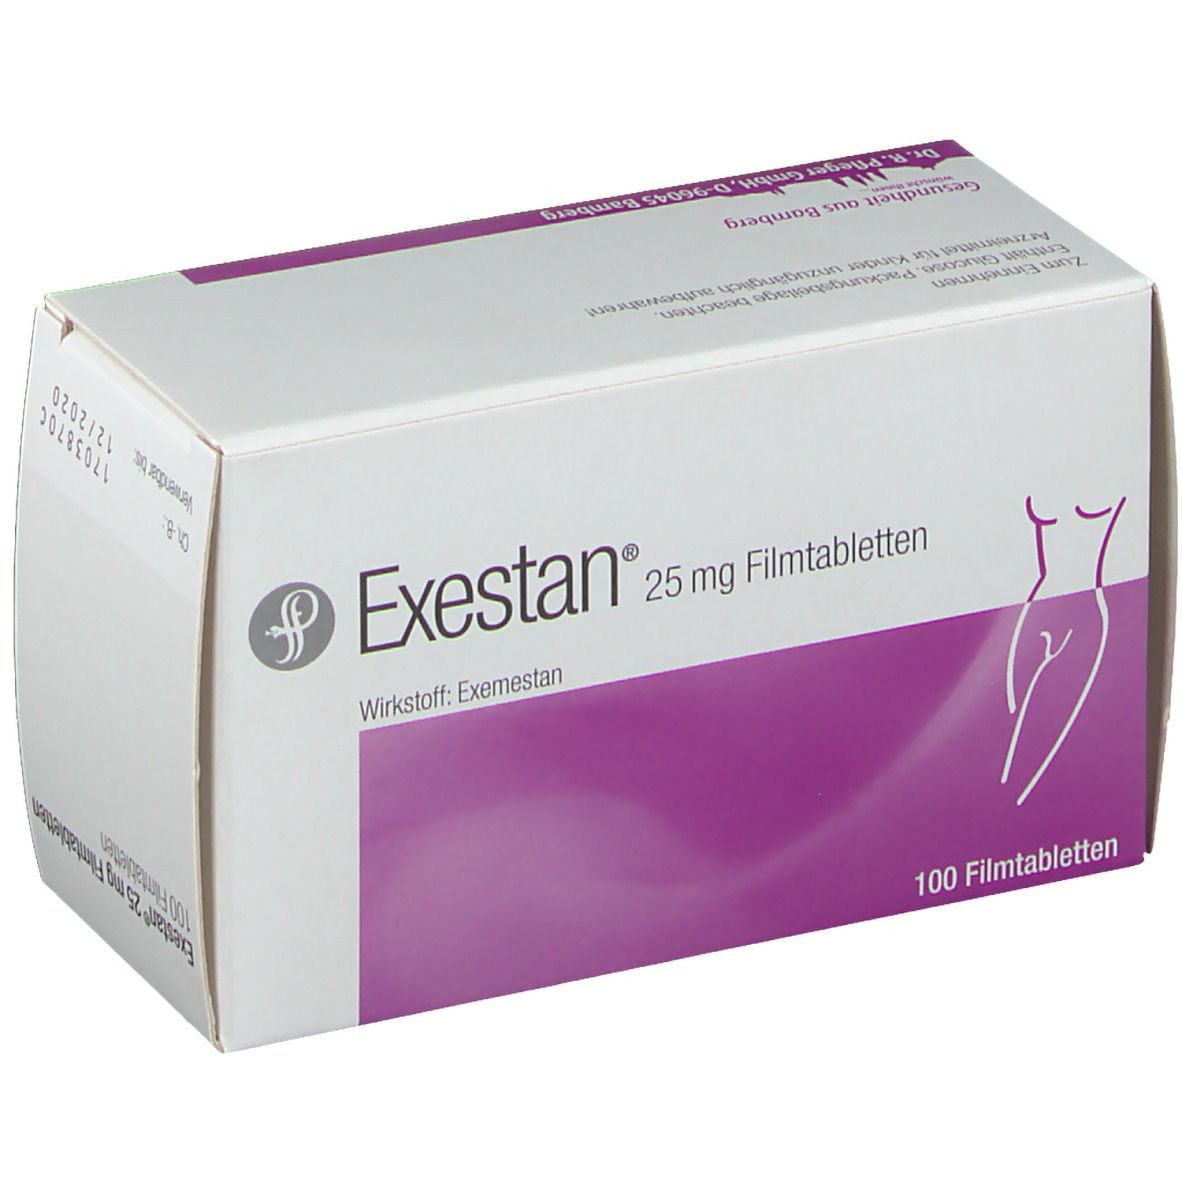 Exestan® 25 mg